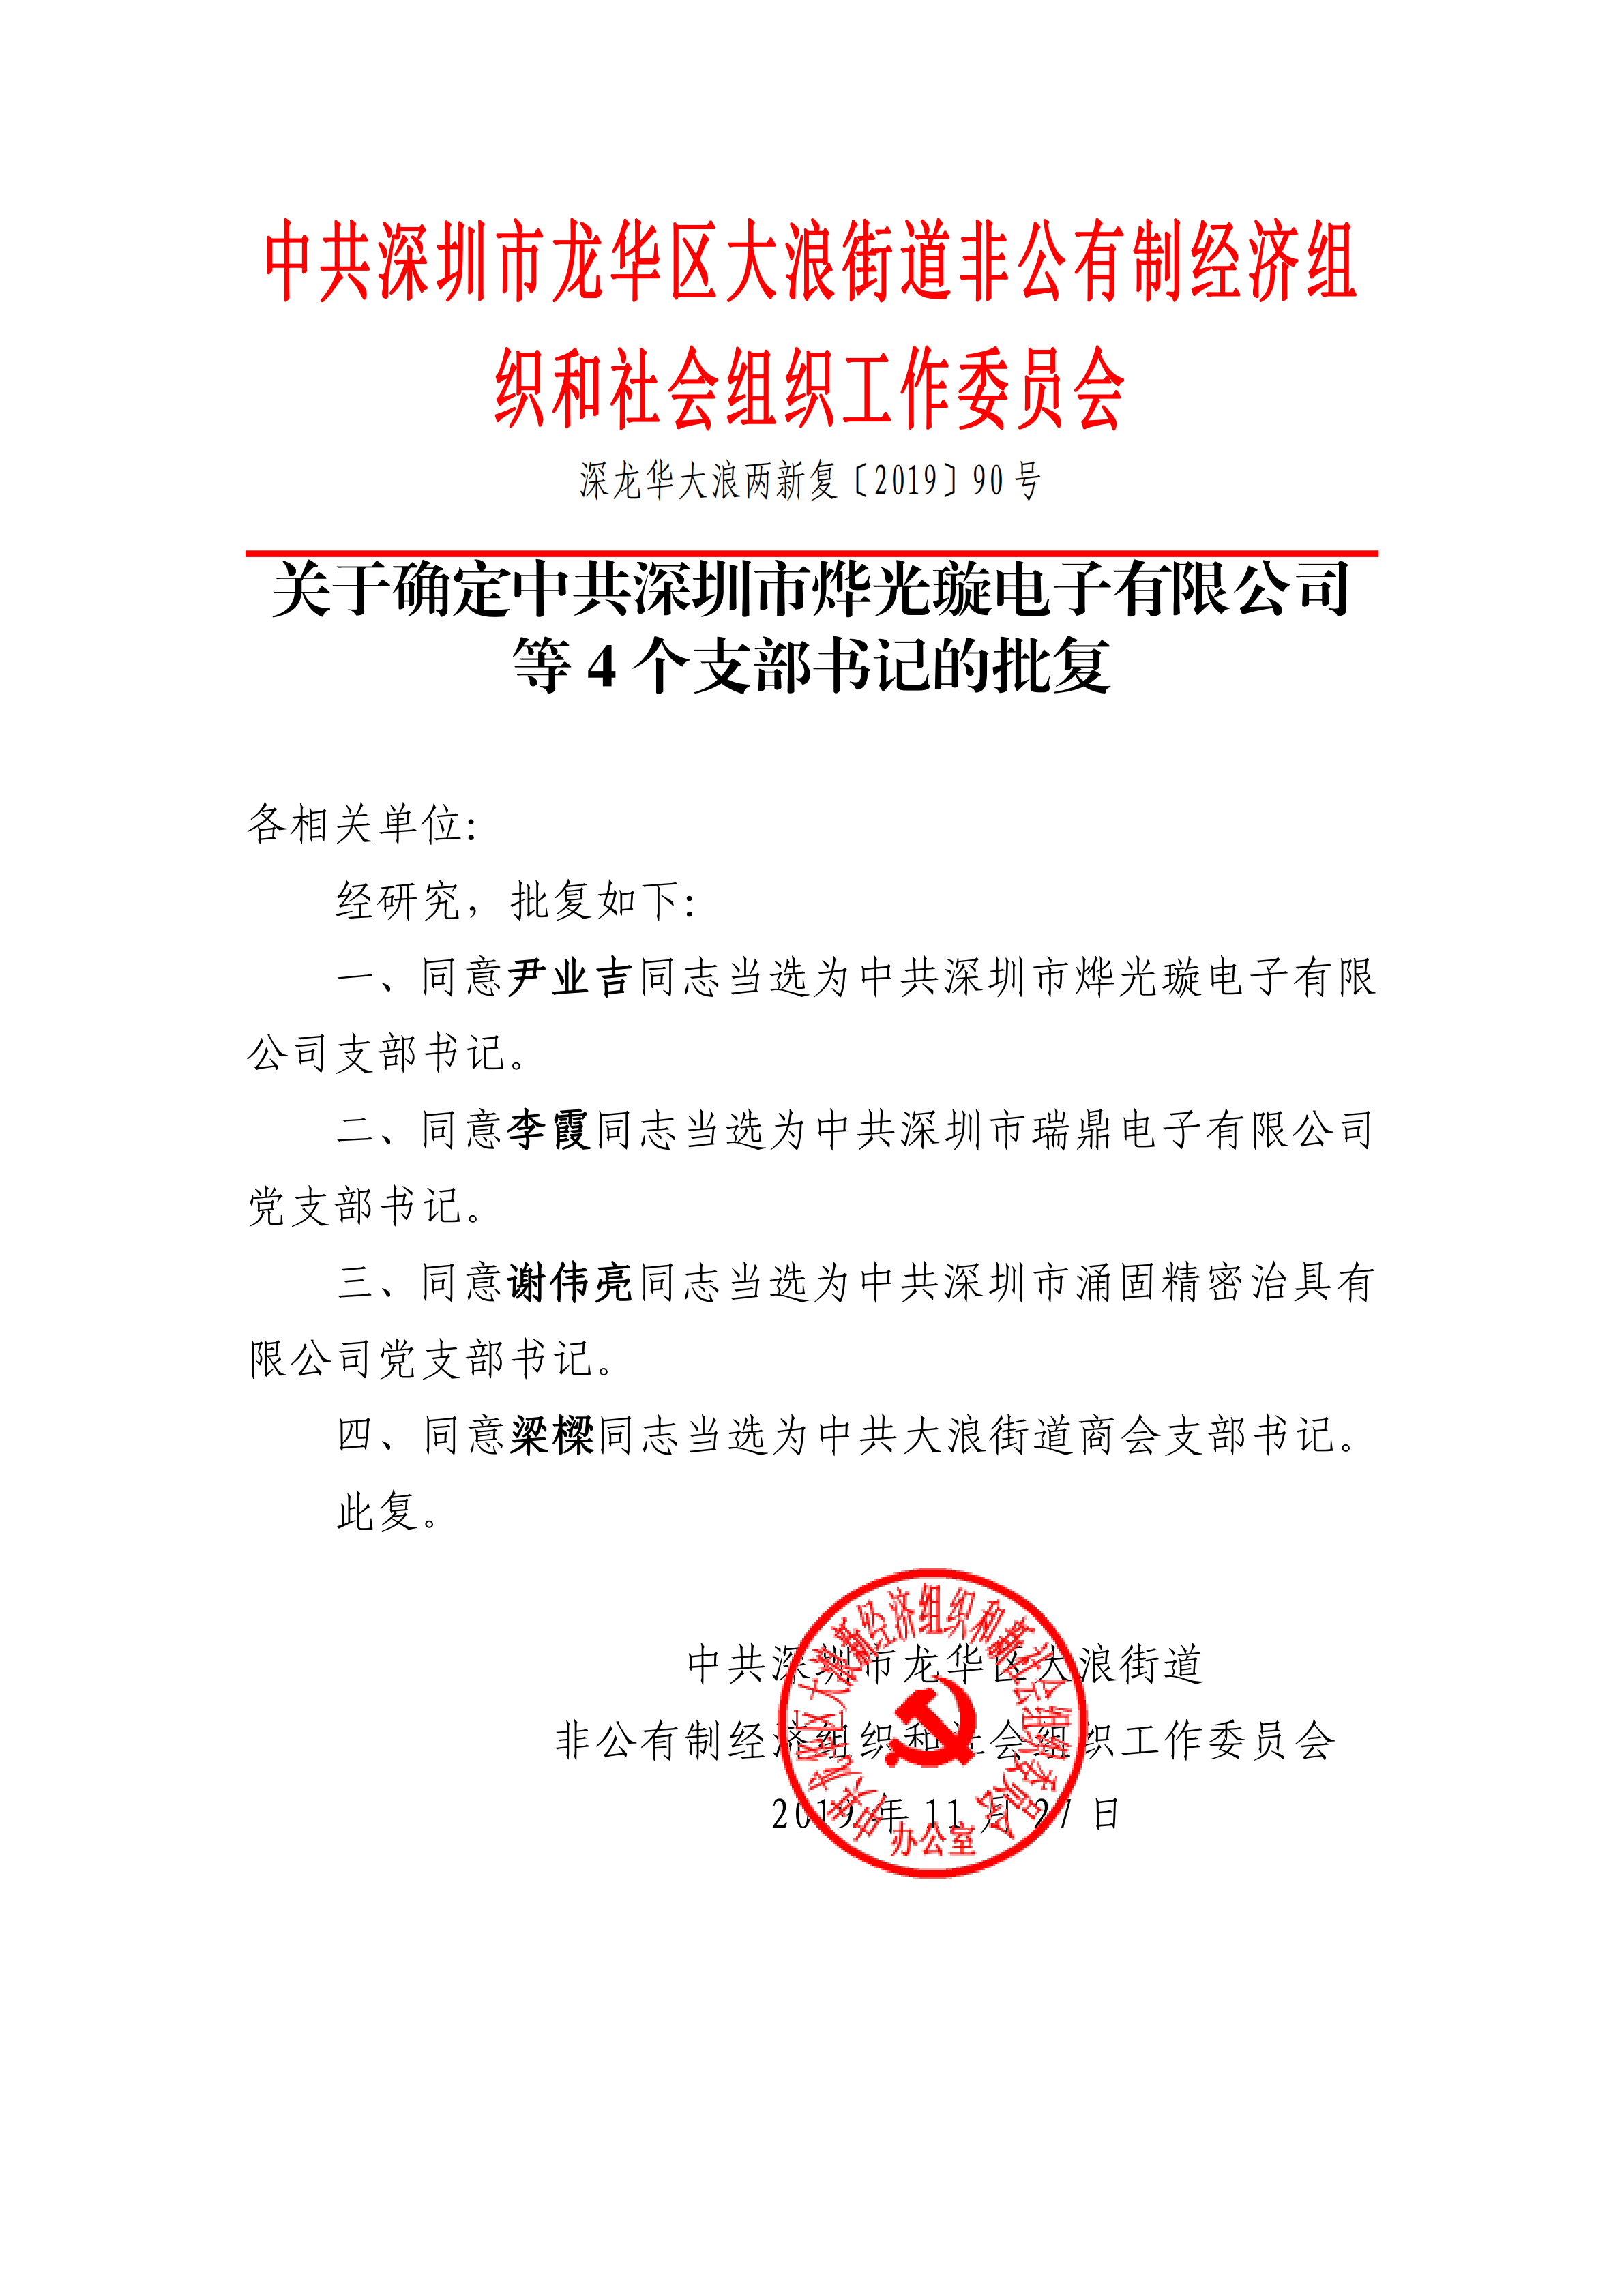 2019年11月27日，深圳市瑞鼎电子有限公司党支部成立